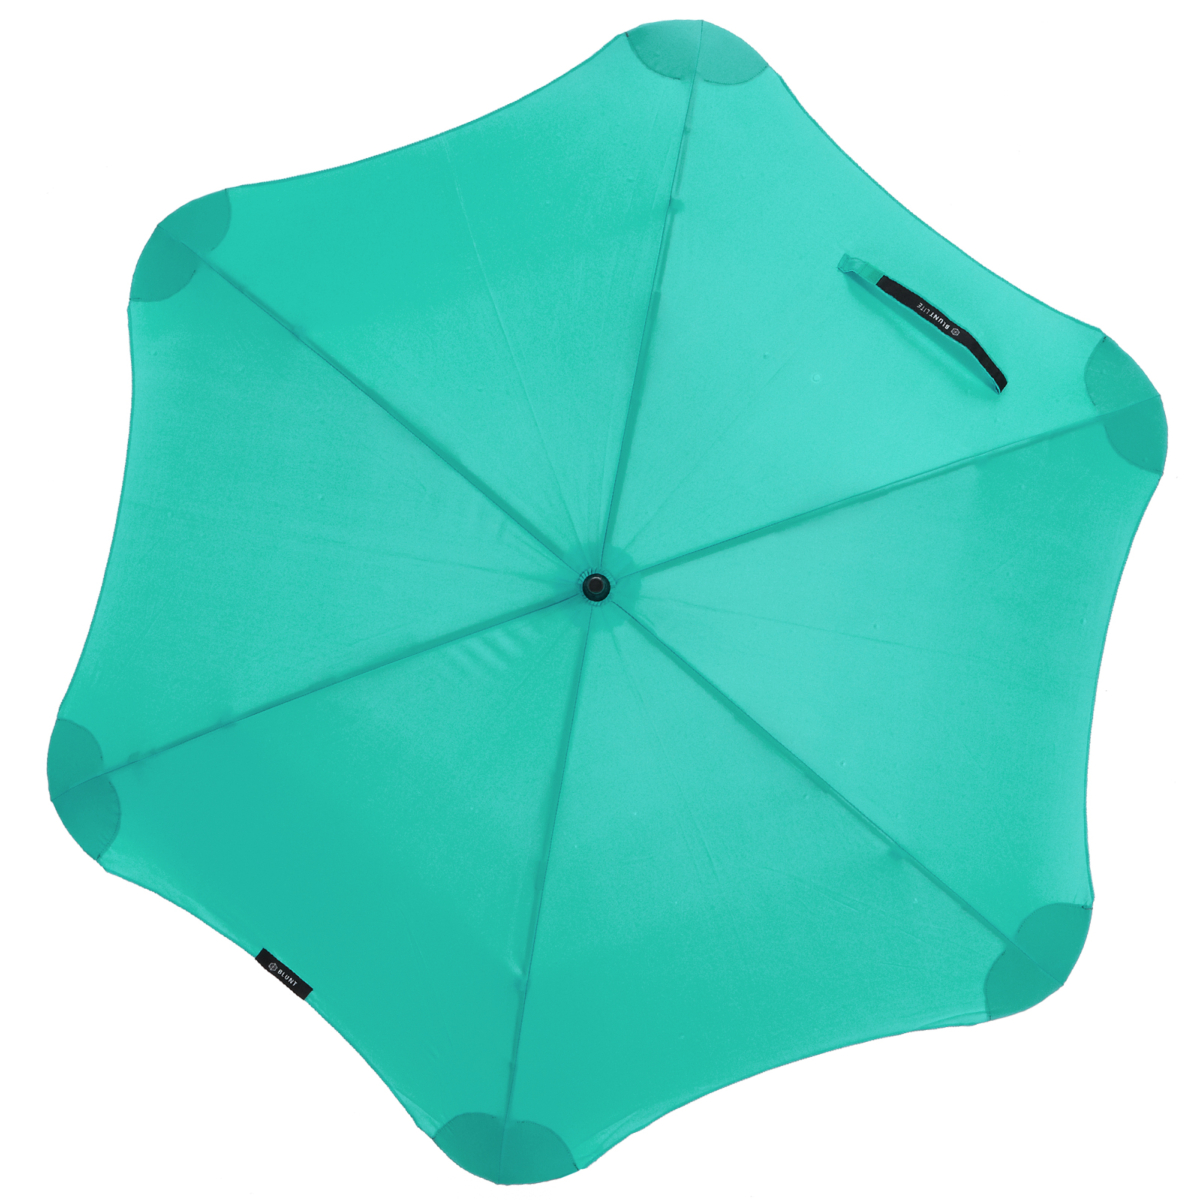 Blunt Classic Umbrella - Mint